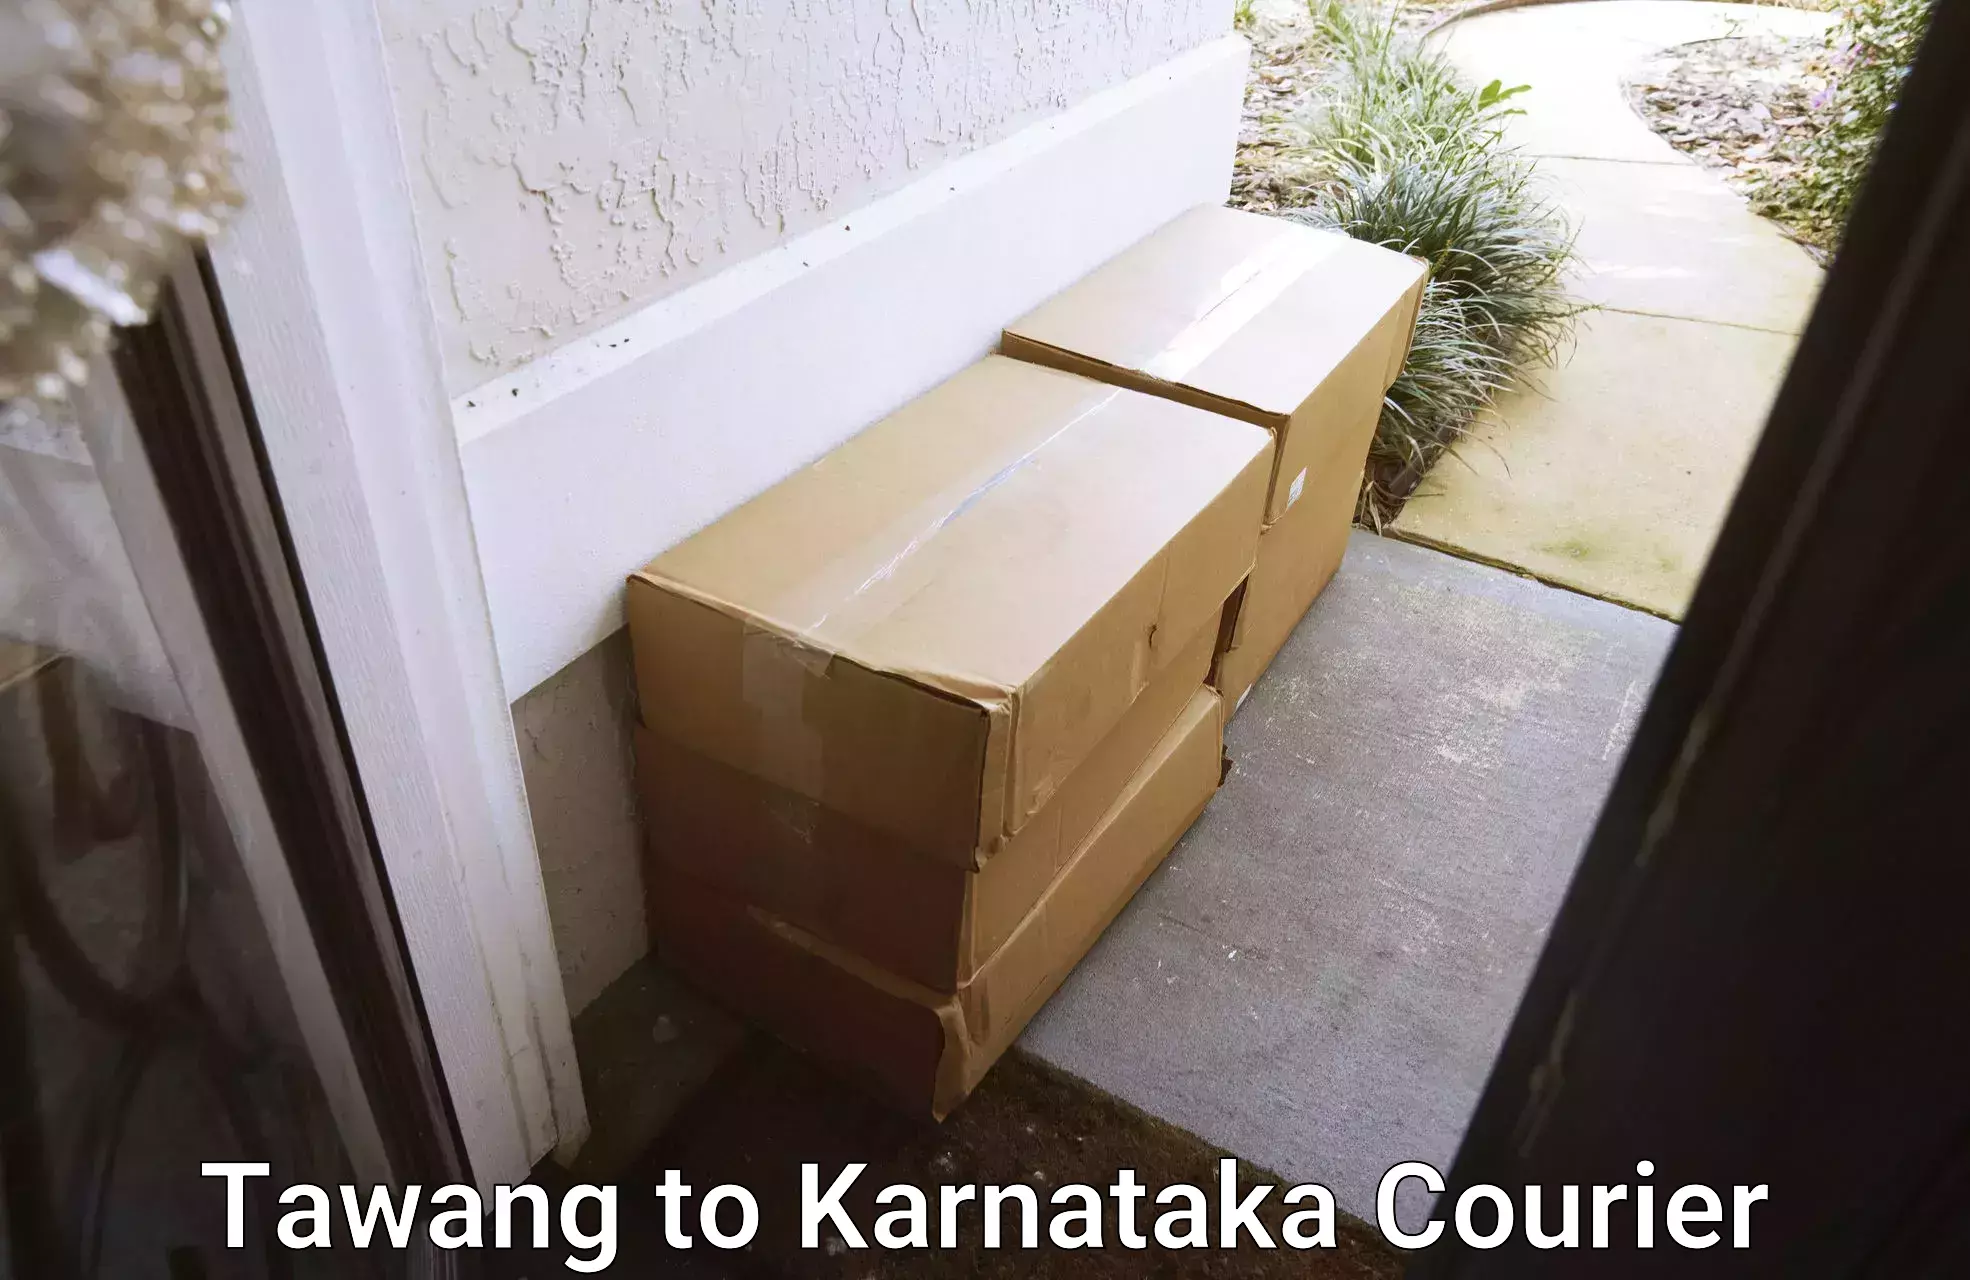 Small parcel delivery Tawang to Kurugodu